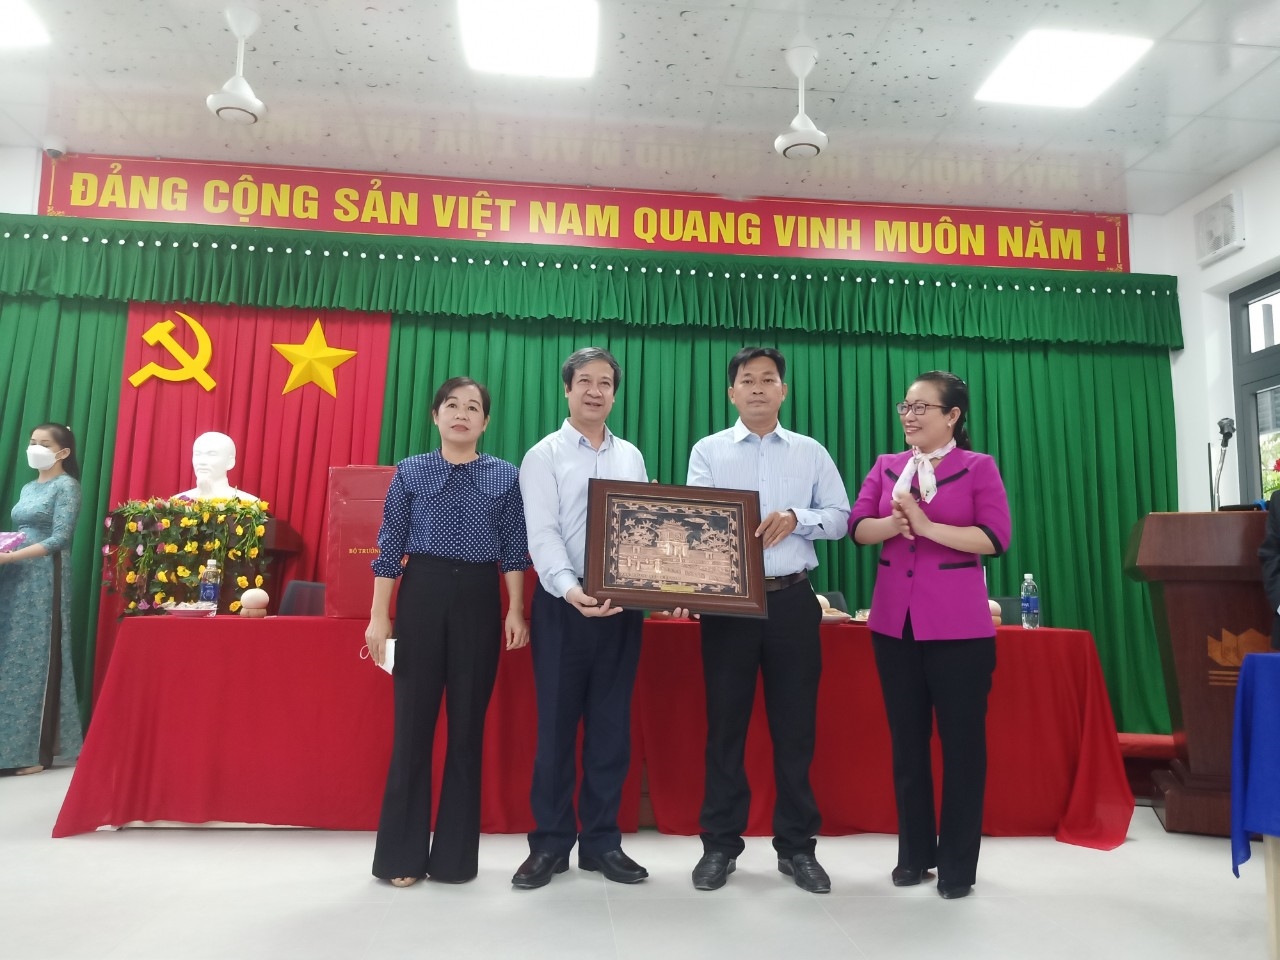 Bộ trưởng Bộ Giáo dục và Đà tạo Nguyễn Kim Sơn tặng quà lưu niệm cho Trường THCS Châu Hòa